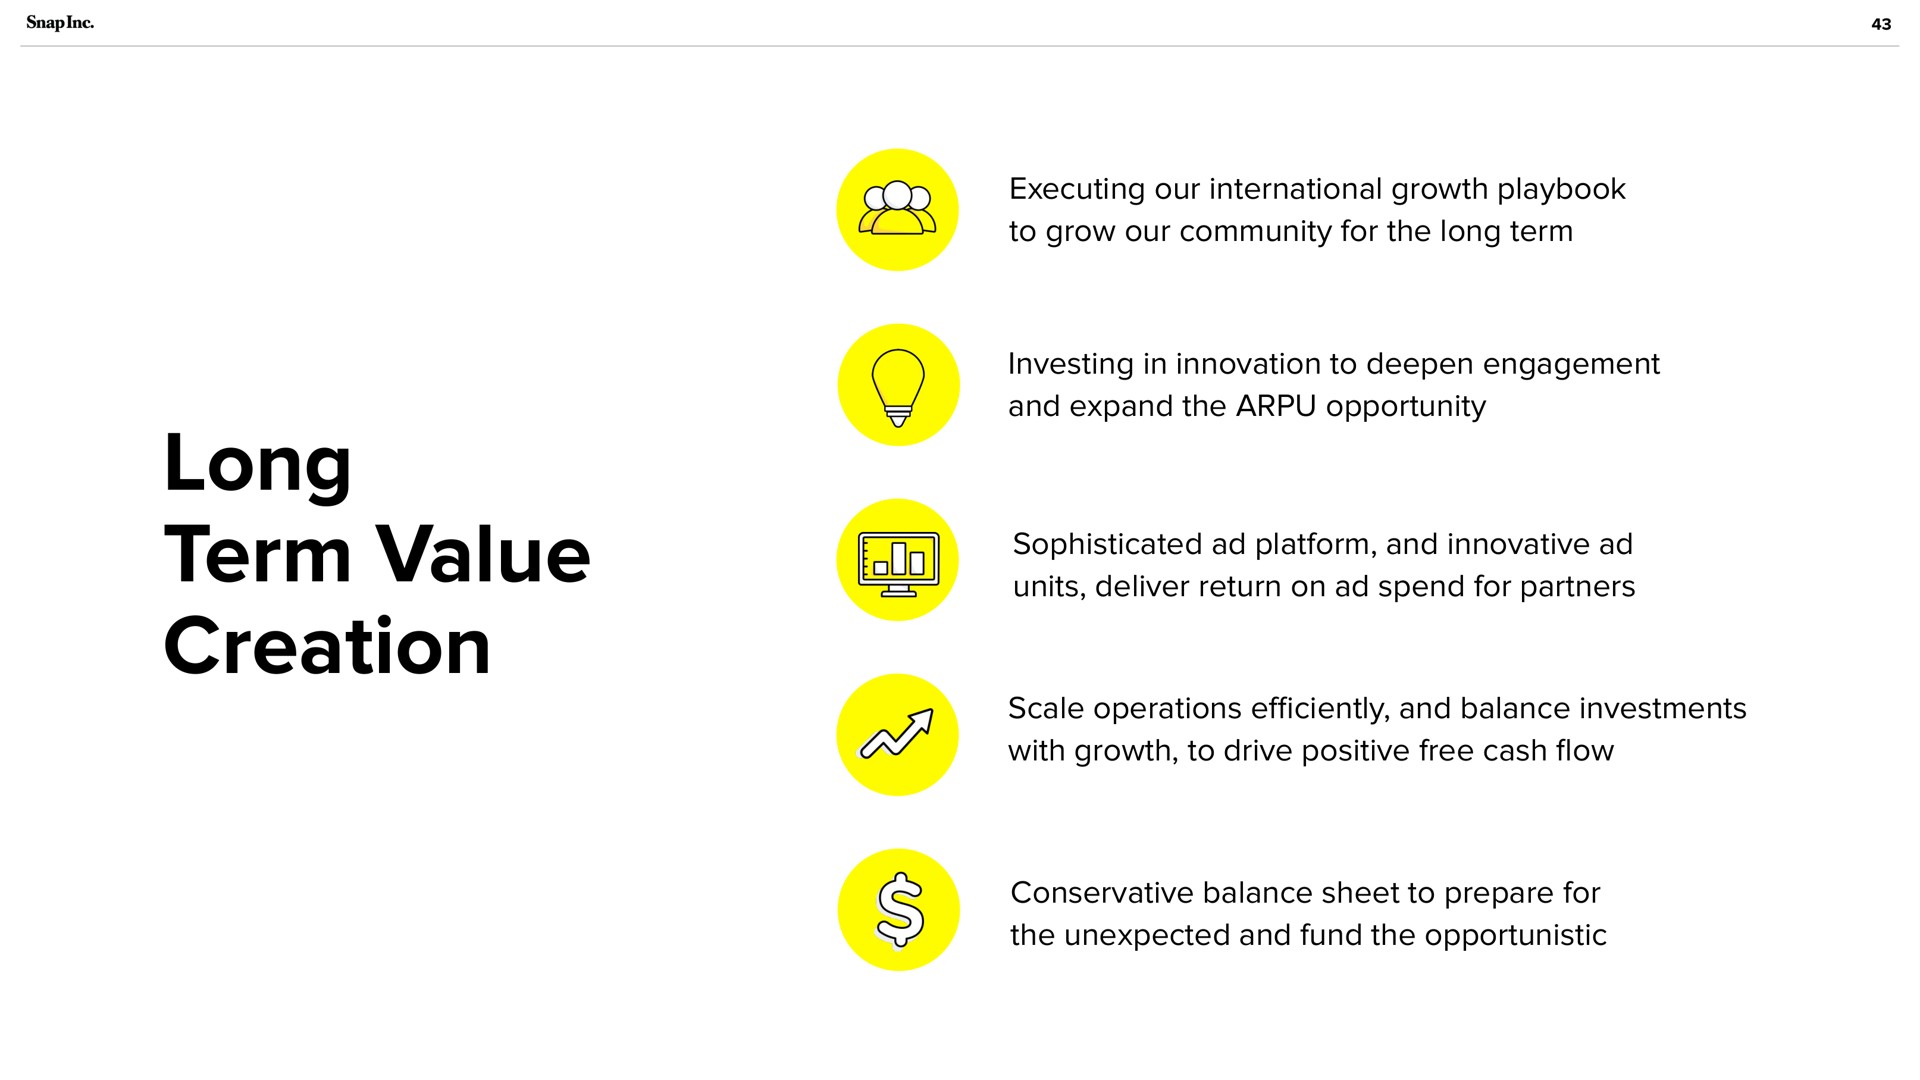 long term value creation | Snap Inc